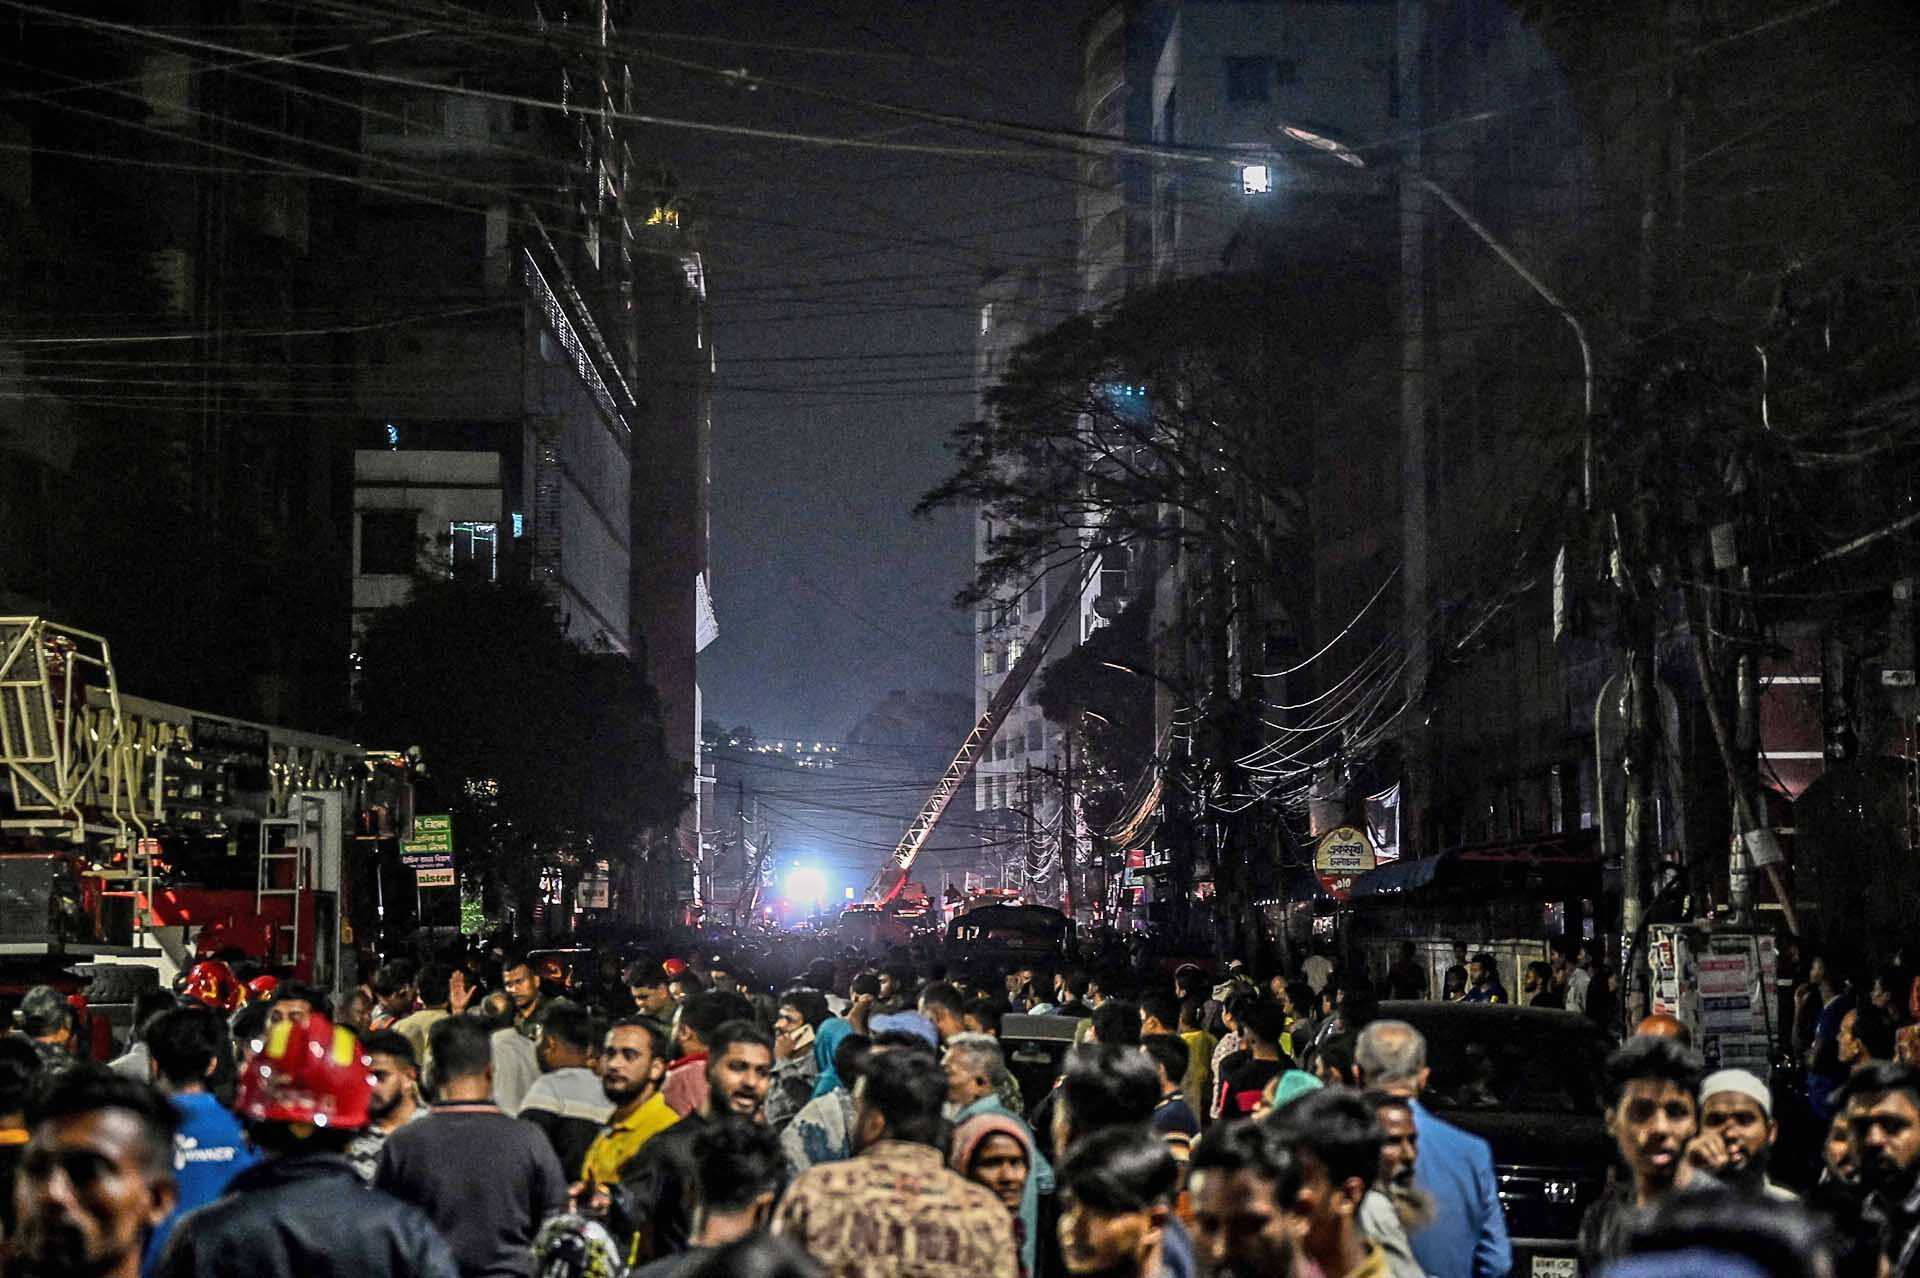 ไฟไหม้ร้านอาหาร “ลามเผาอาคารสูง 7 ชั้น” ในบังกลาเทศ ดับแล้ว 43 ศพ-เจ็บอื้อ